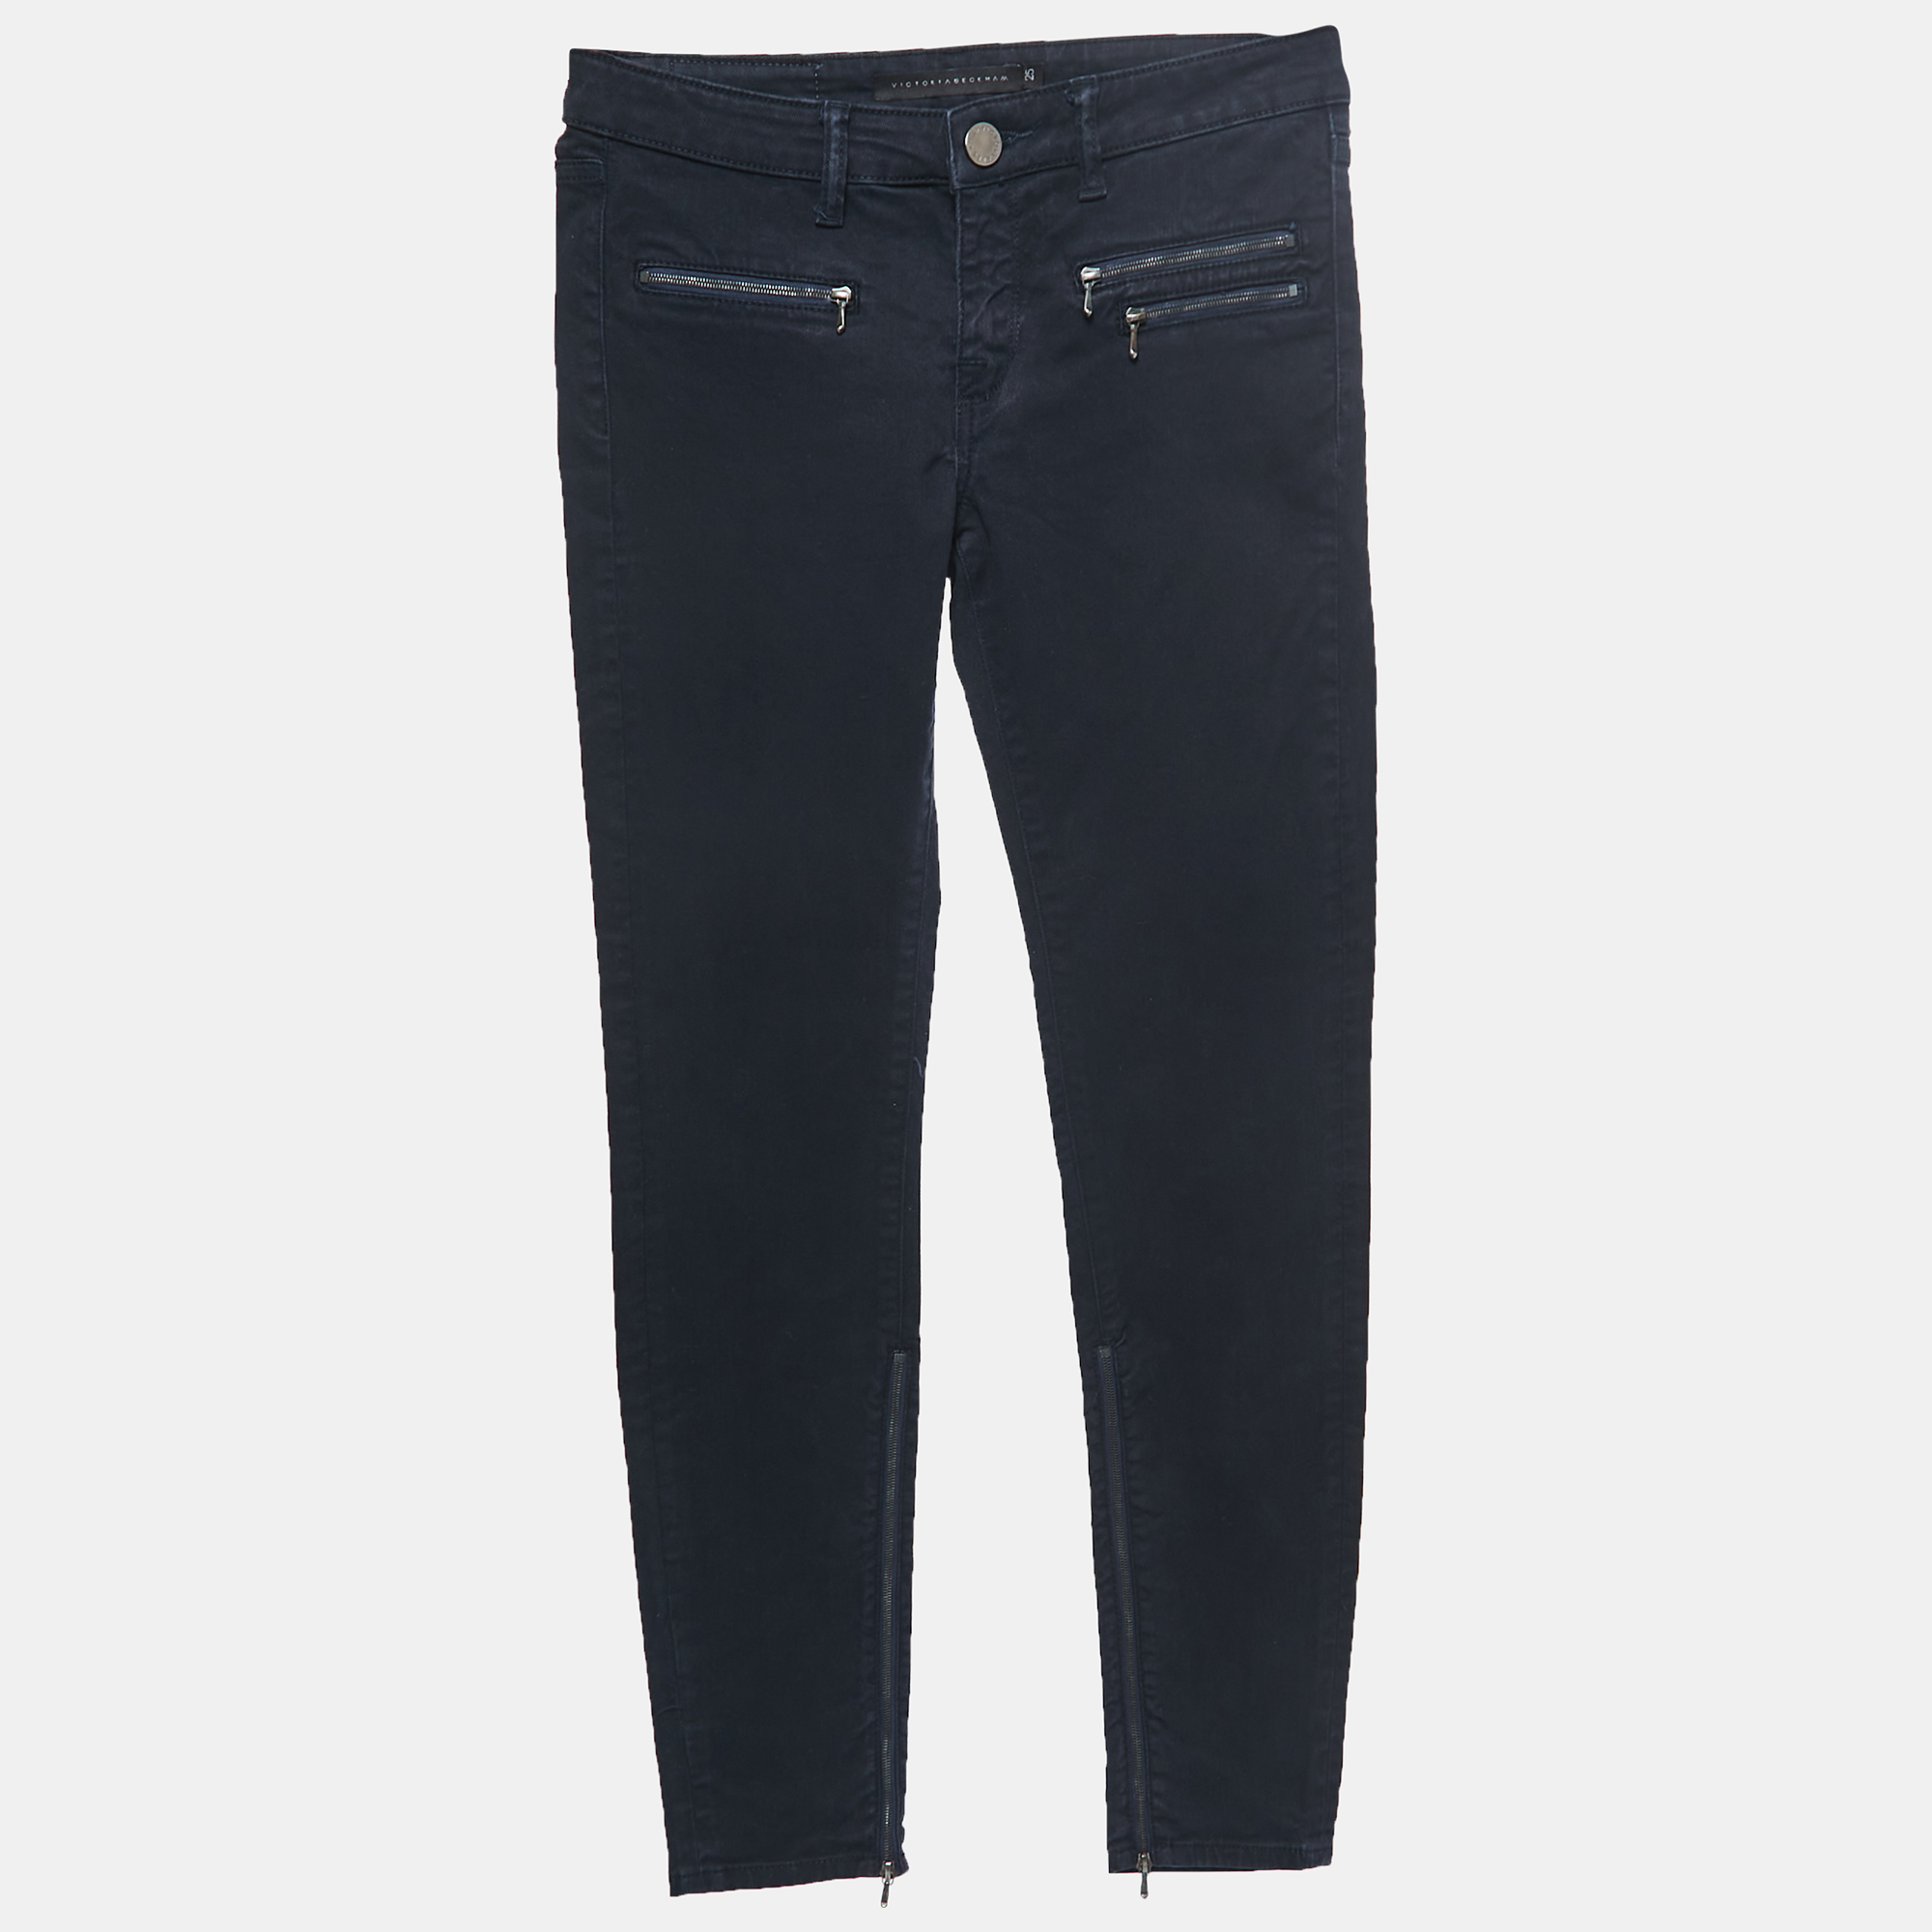 

Victoria Beckham Navy Blue Denim Slim Fit Jeans  Waist 25